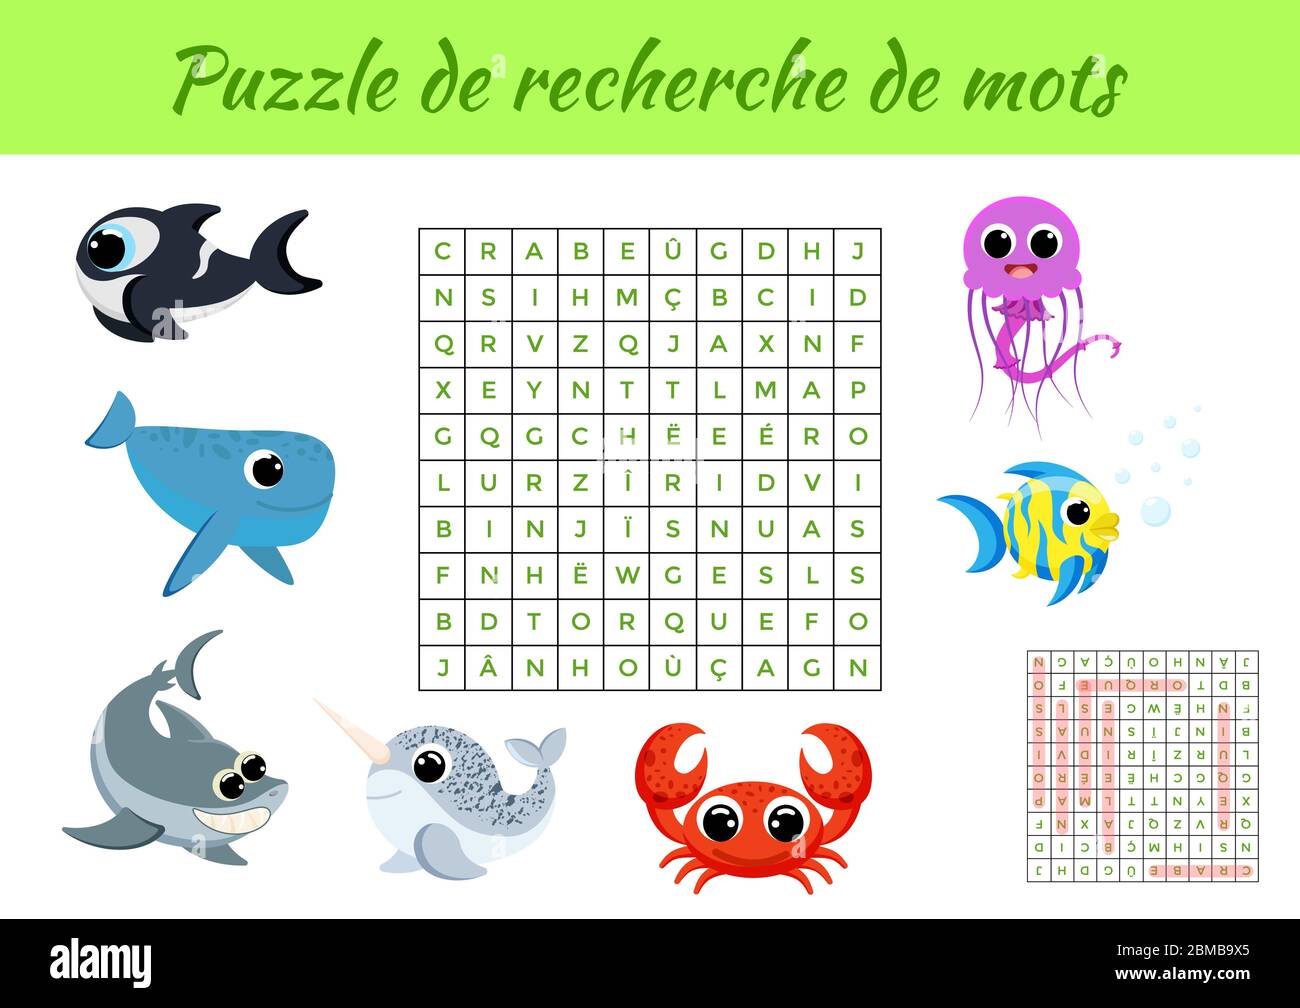 Puzzle de Recherche de mots - Wortsuche Puzzle mit Bildern. Lernspiel für  Französisch lernen Wörter. Arbeitsblatt für Aktivitäten, farbenfrohe  druckbare Version Stock-Vektorgrafik - Alamy